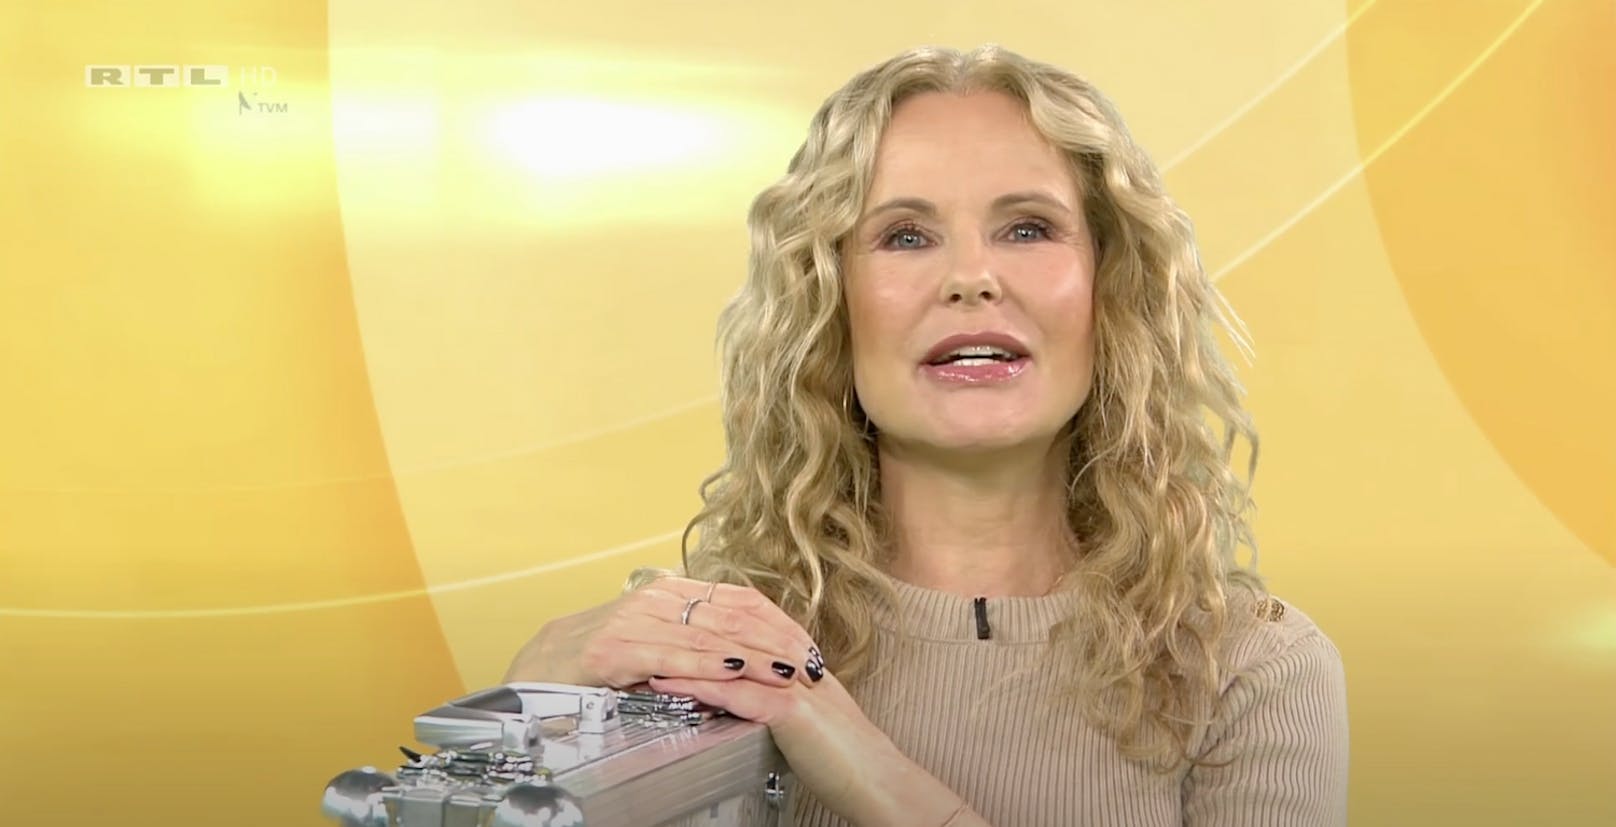 RTL-Moderatorin Katja Burkard sagt ganz offen, was ihr nicht passt.